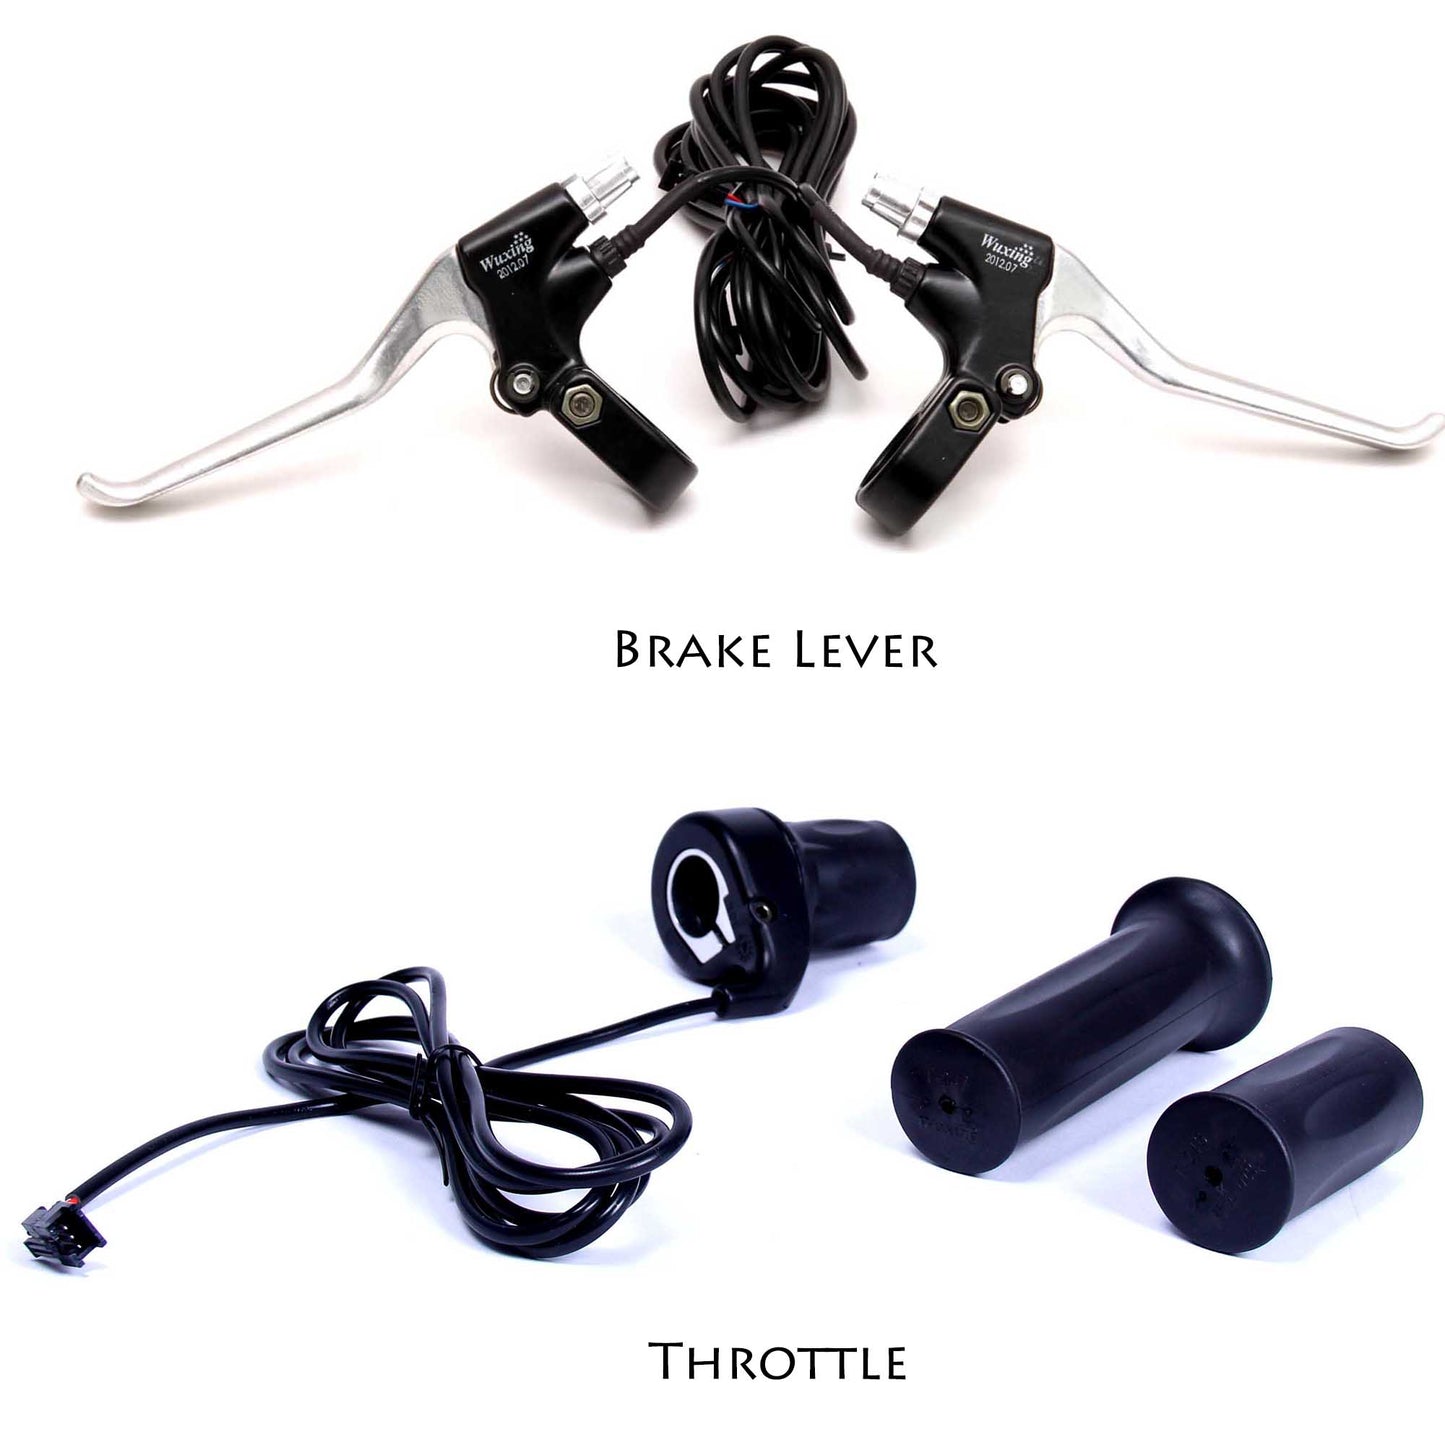 brake lever, throttle for hub motor kit